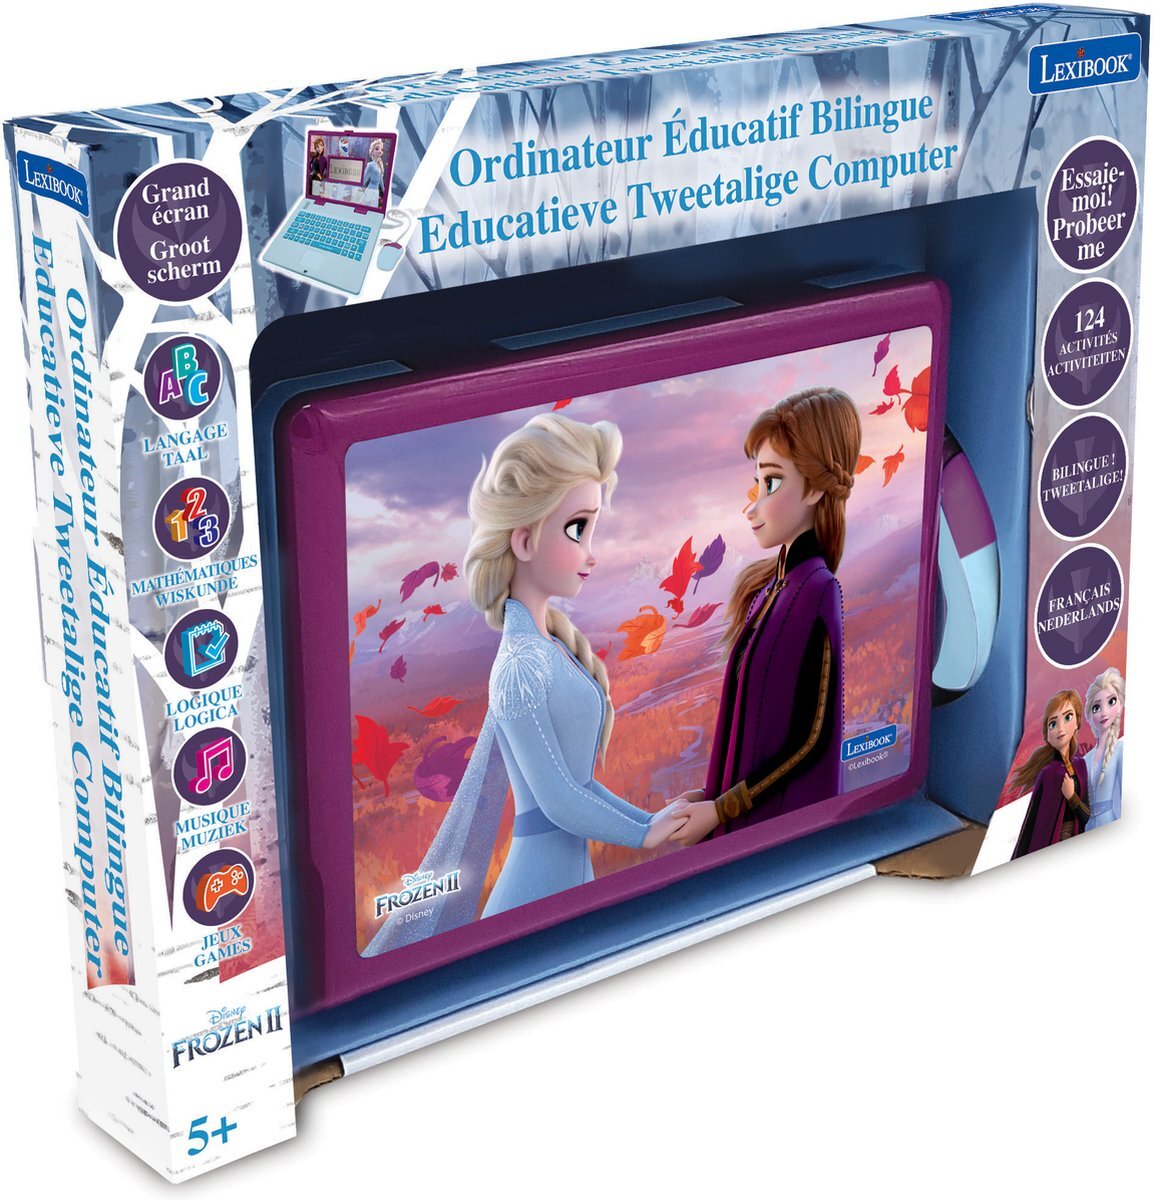 Disney Frozen Lexibook 2 - Educatieve tweetalige computer 124 activiteiten - JC598FZi10 - Frans/Nederlands